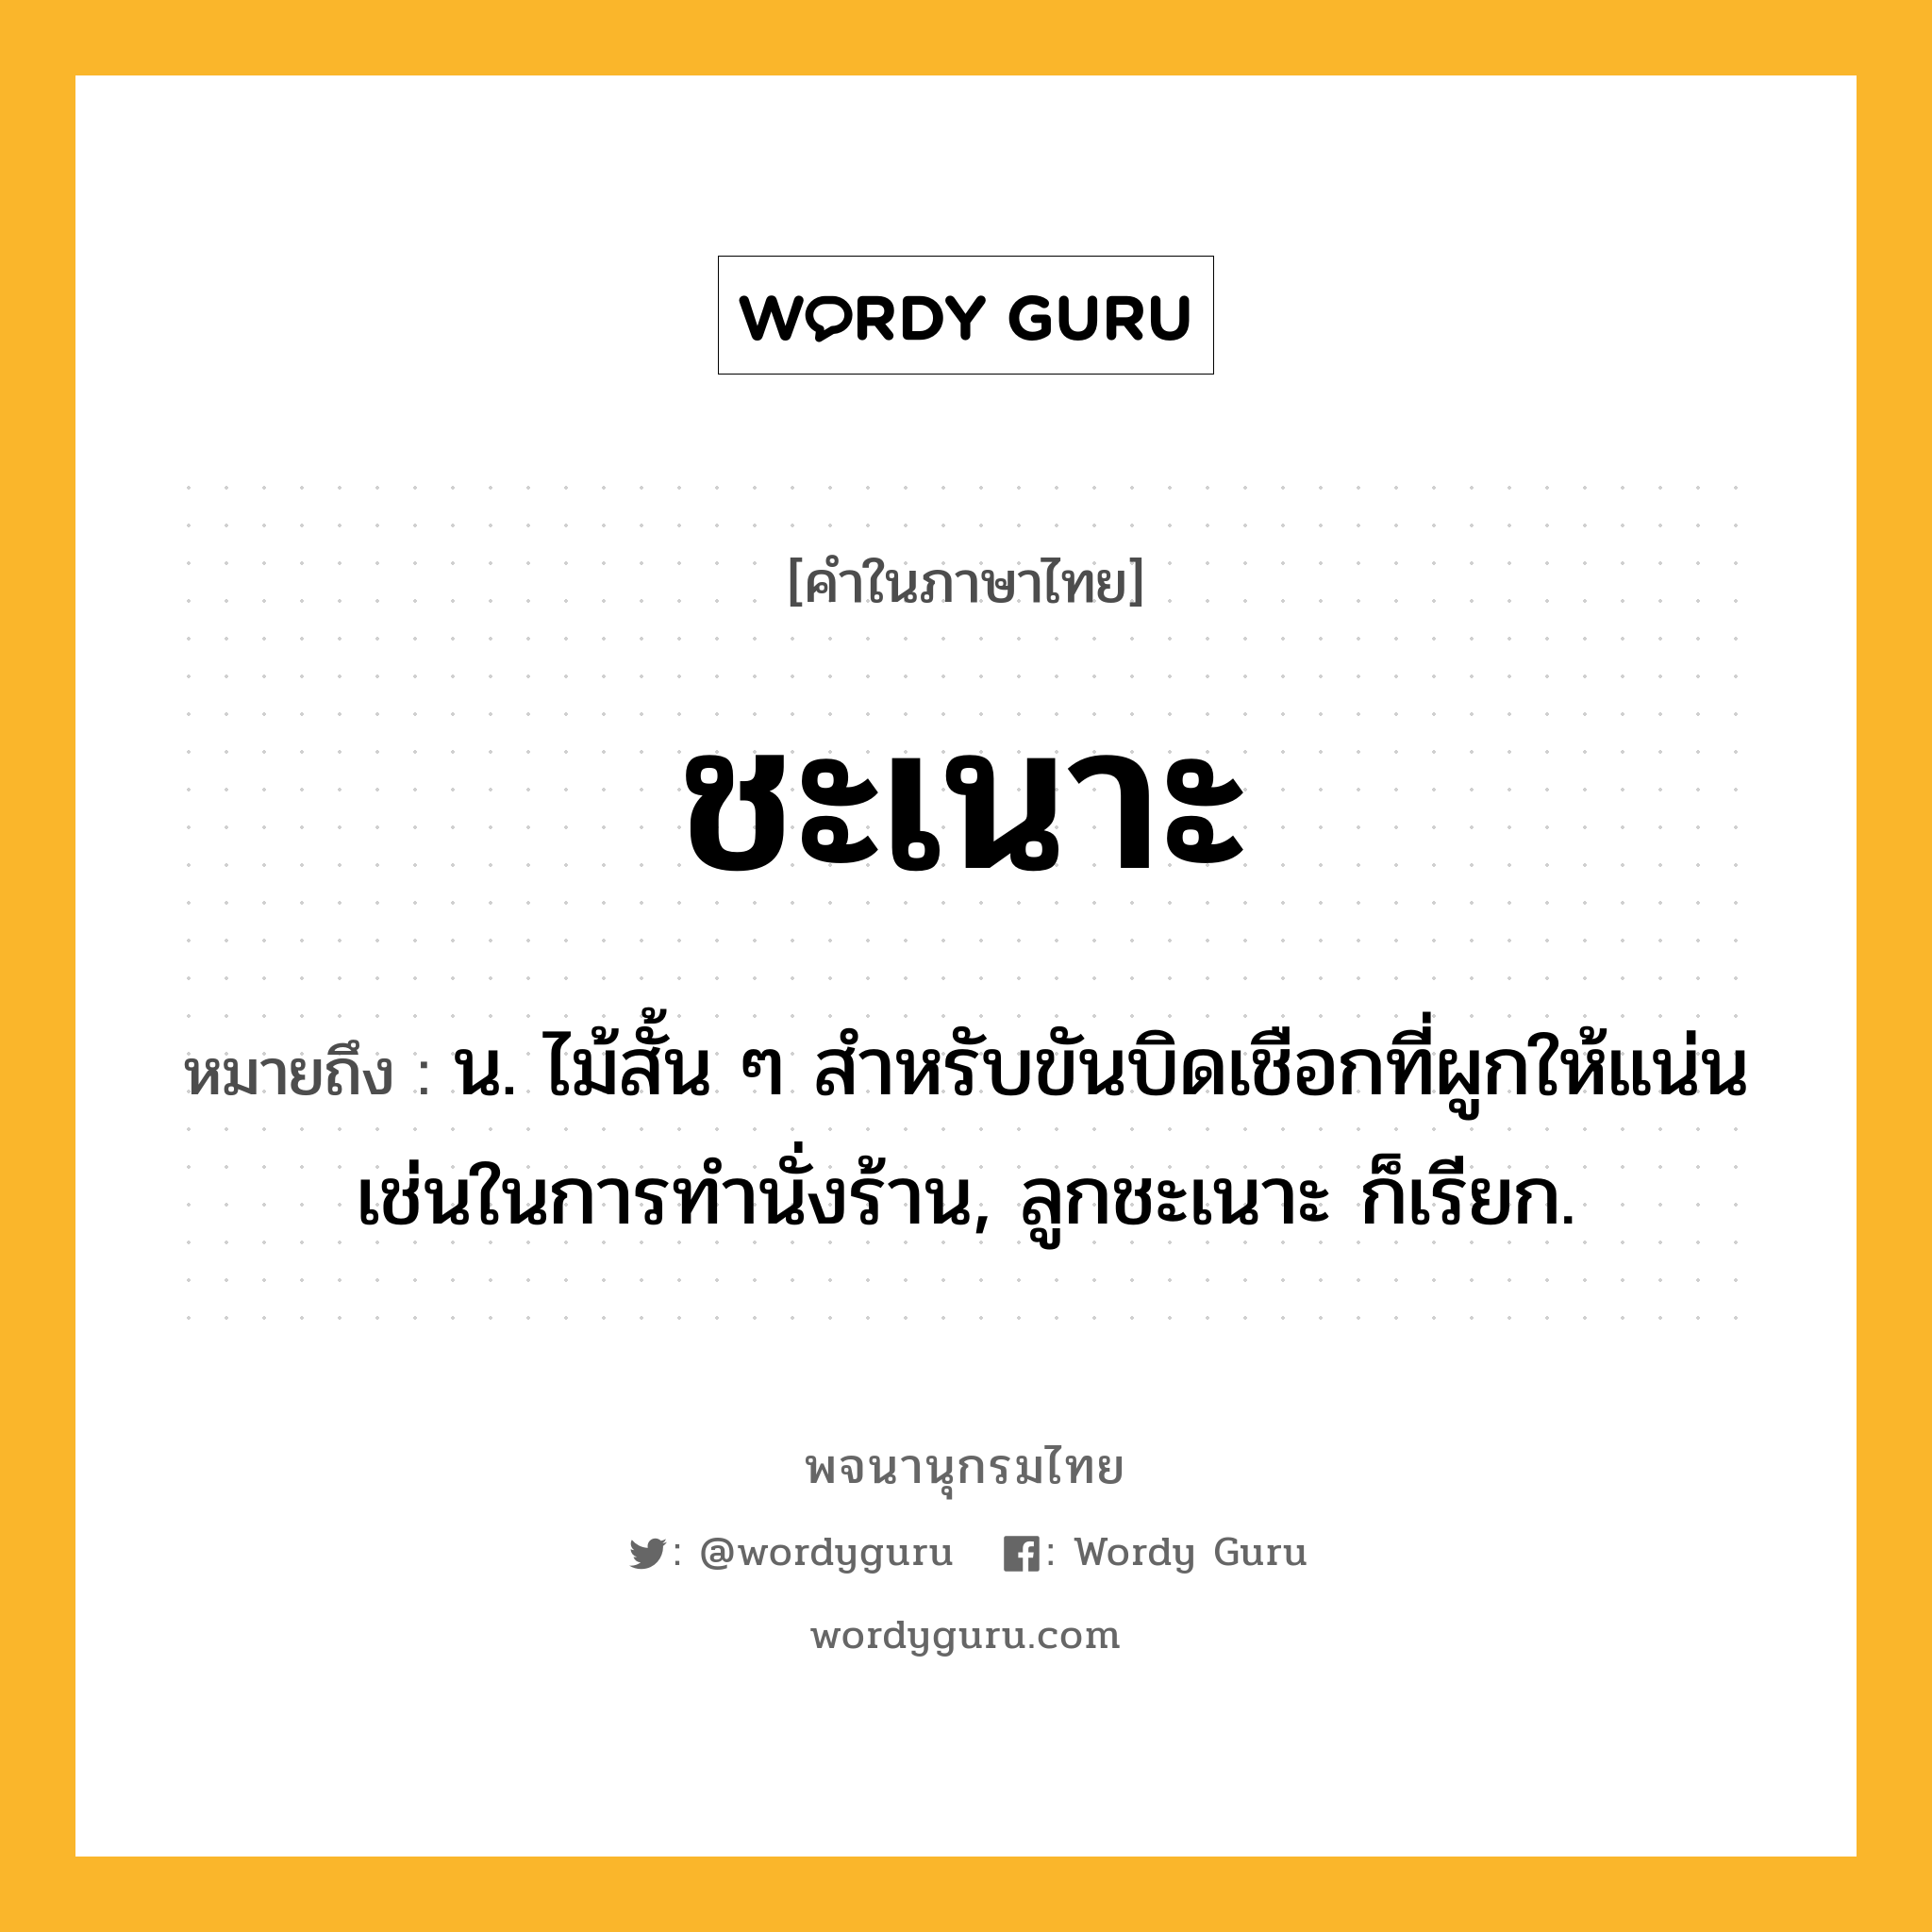 ชะเนาะ หมายถึงอะไร?, คำในภาษาไทย ชะเนาะ หมายถึง น. ไม้สั้น ๆ สำหรับขันบิดเชือกที่ผูกให้แน่นเช่นในการทํานั่งร้าน, ลูกชะเนาะ ก็เรียก.